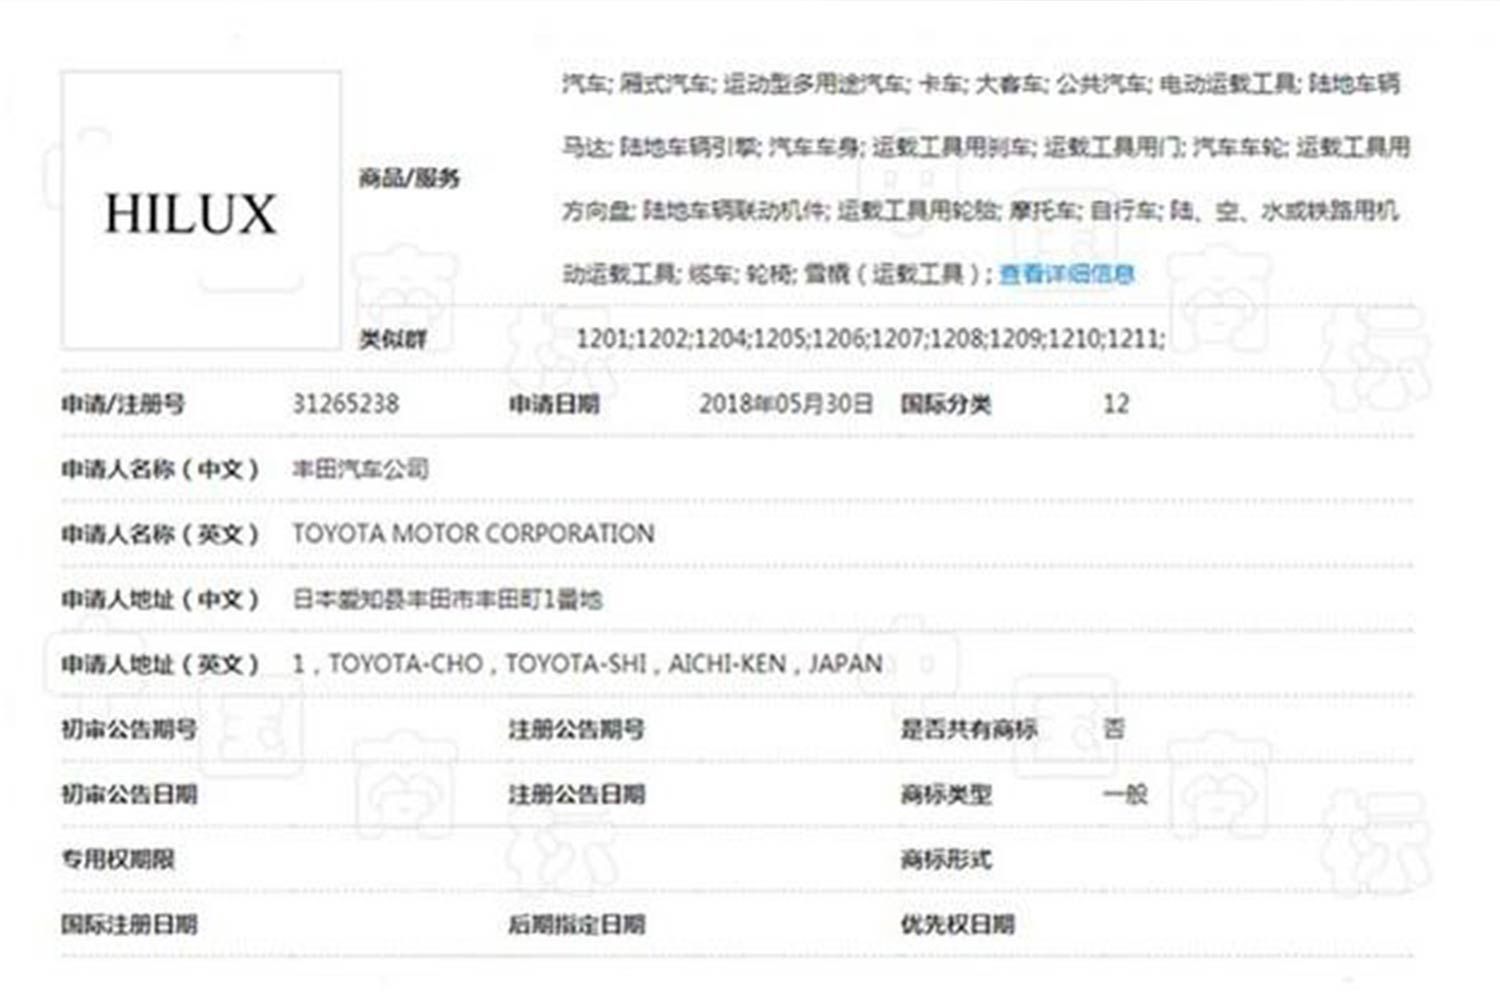 丰田在国内注册HILUX商标 有望引入国内